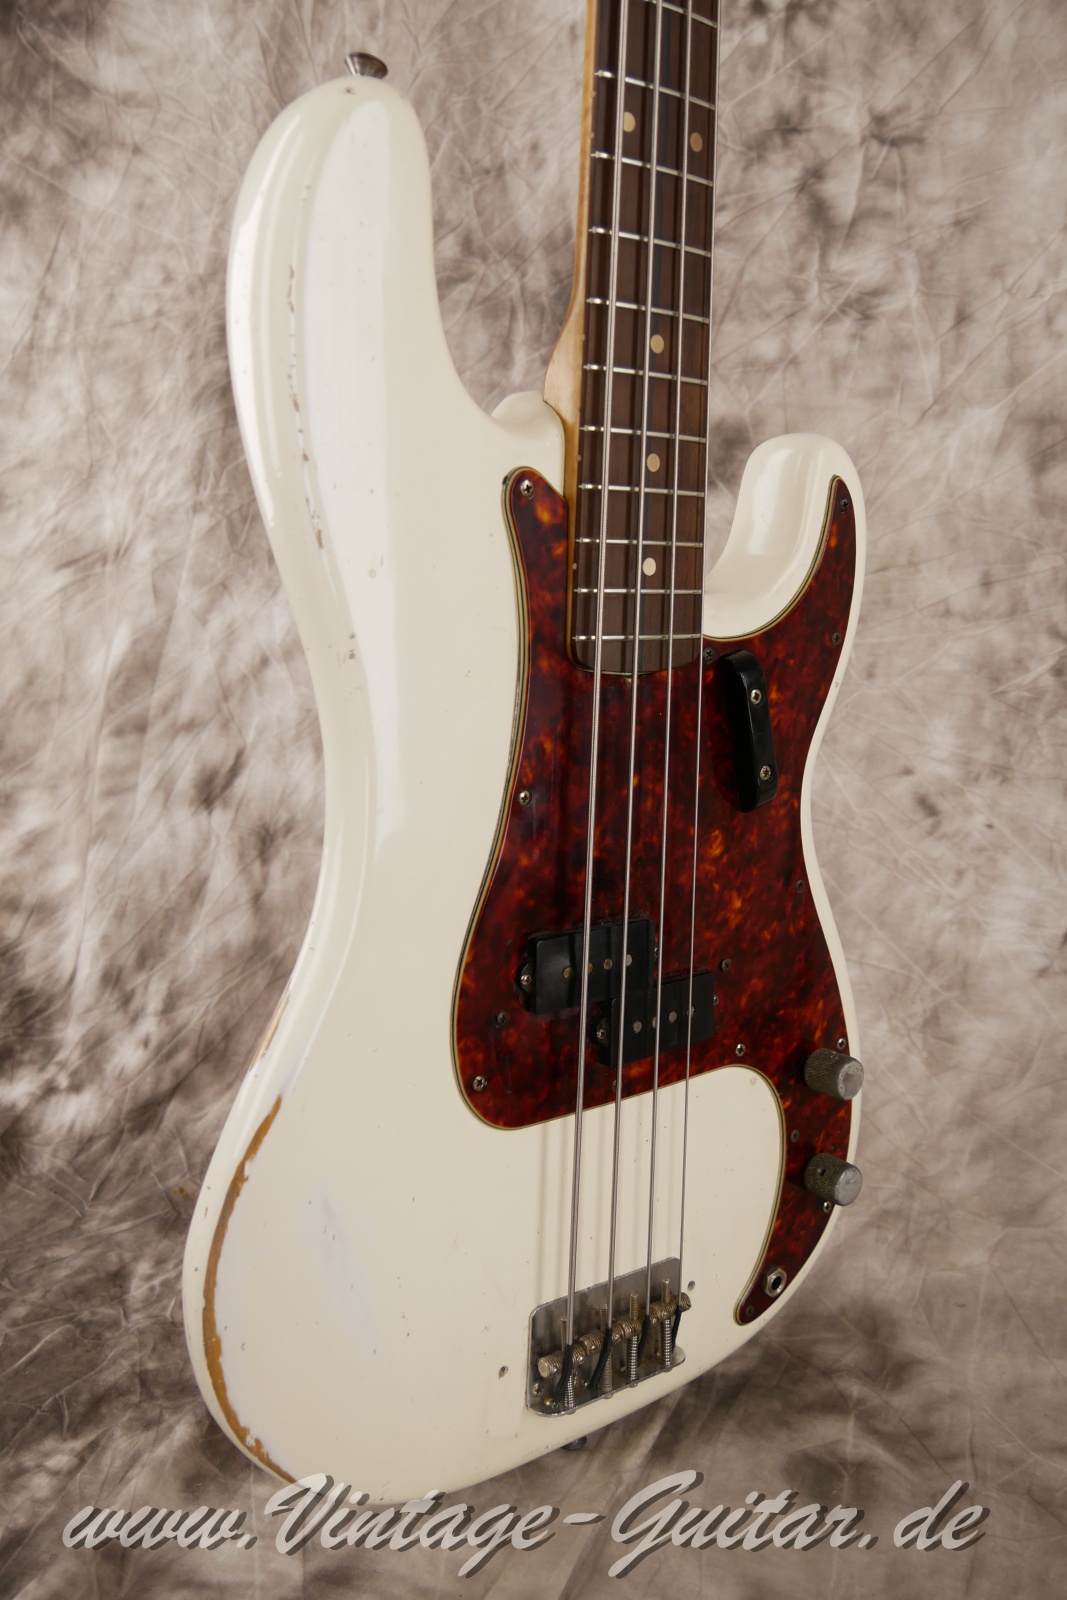 Fender-Precision-Bass-1962-olympic-white-009.JPG